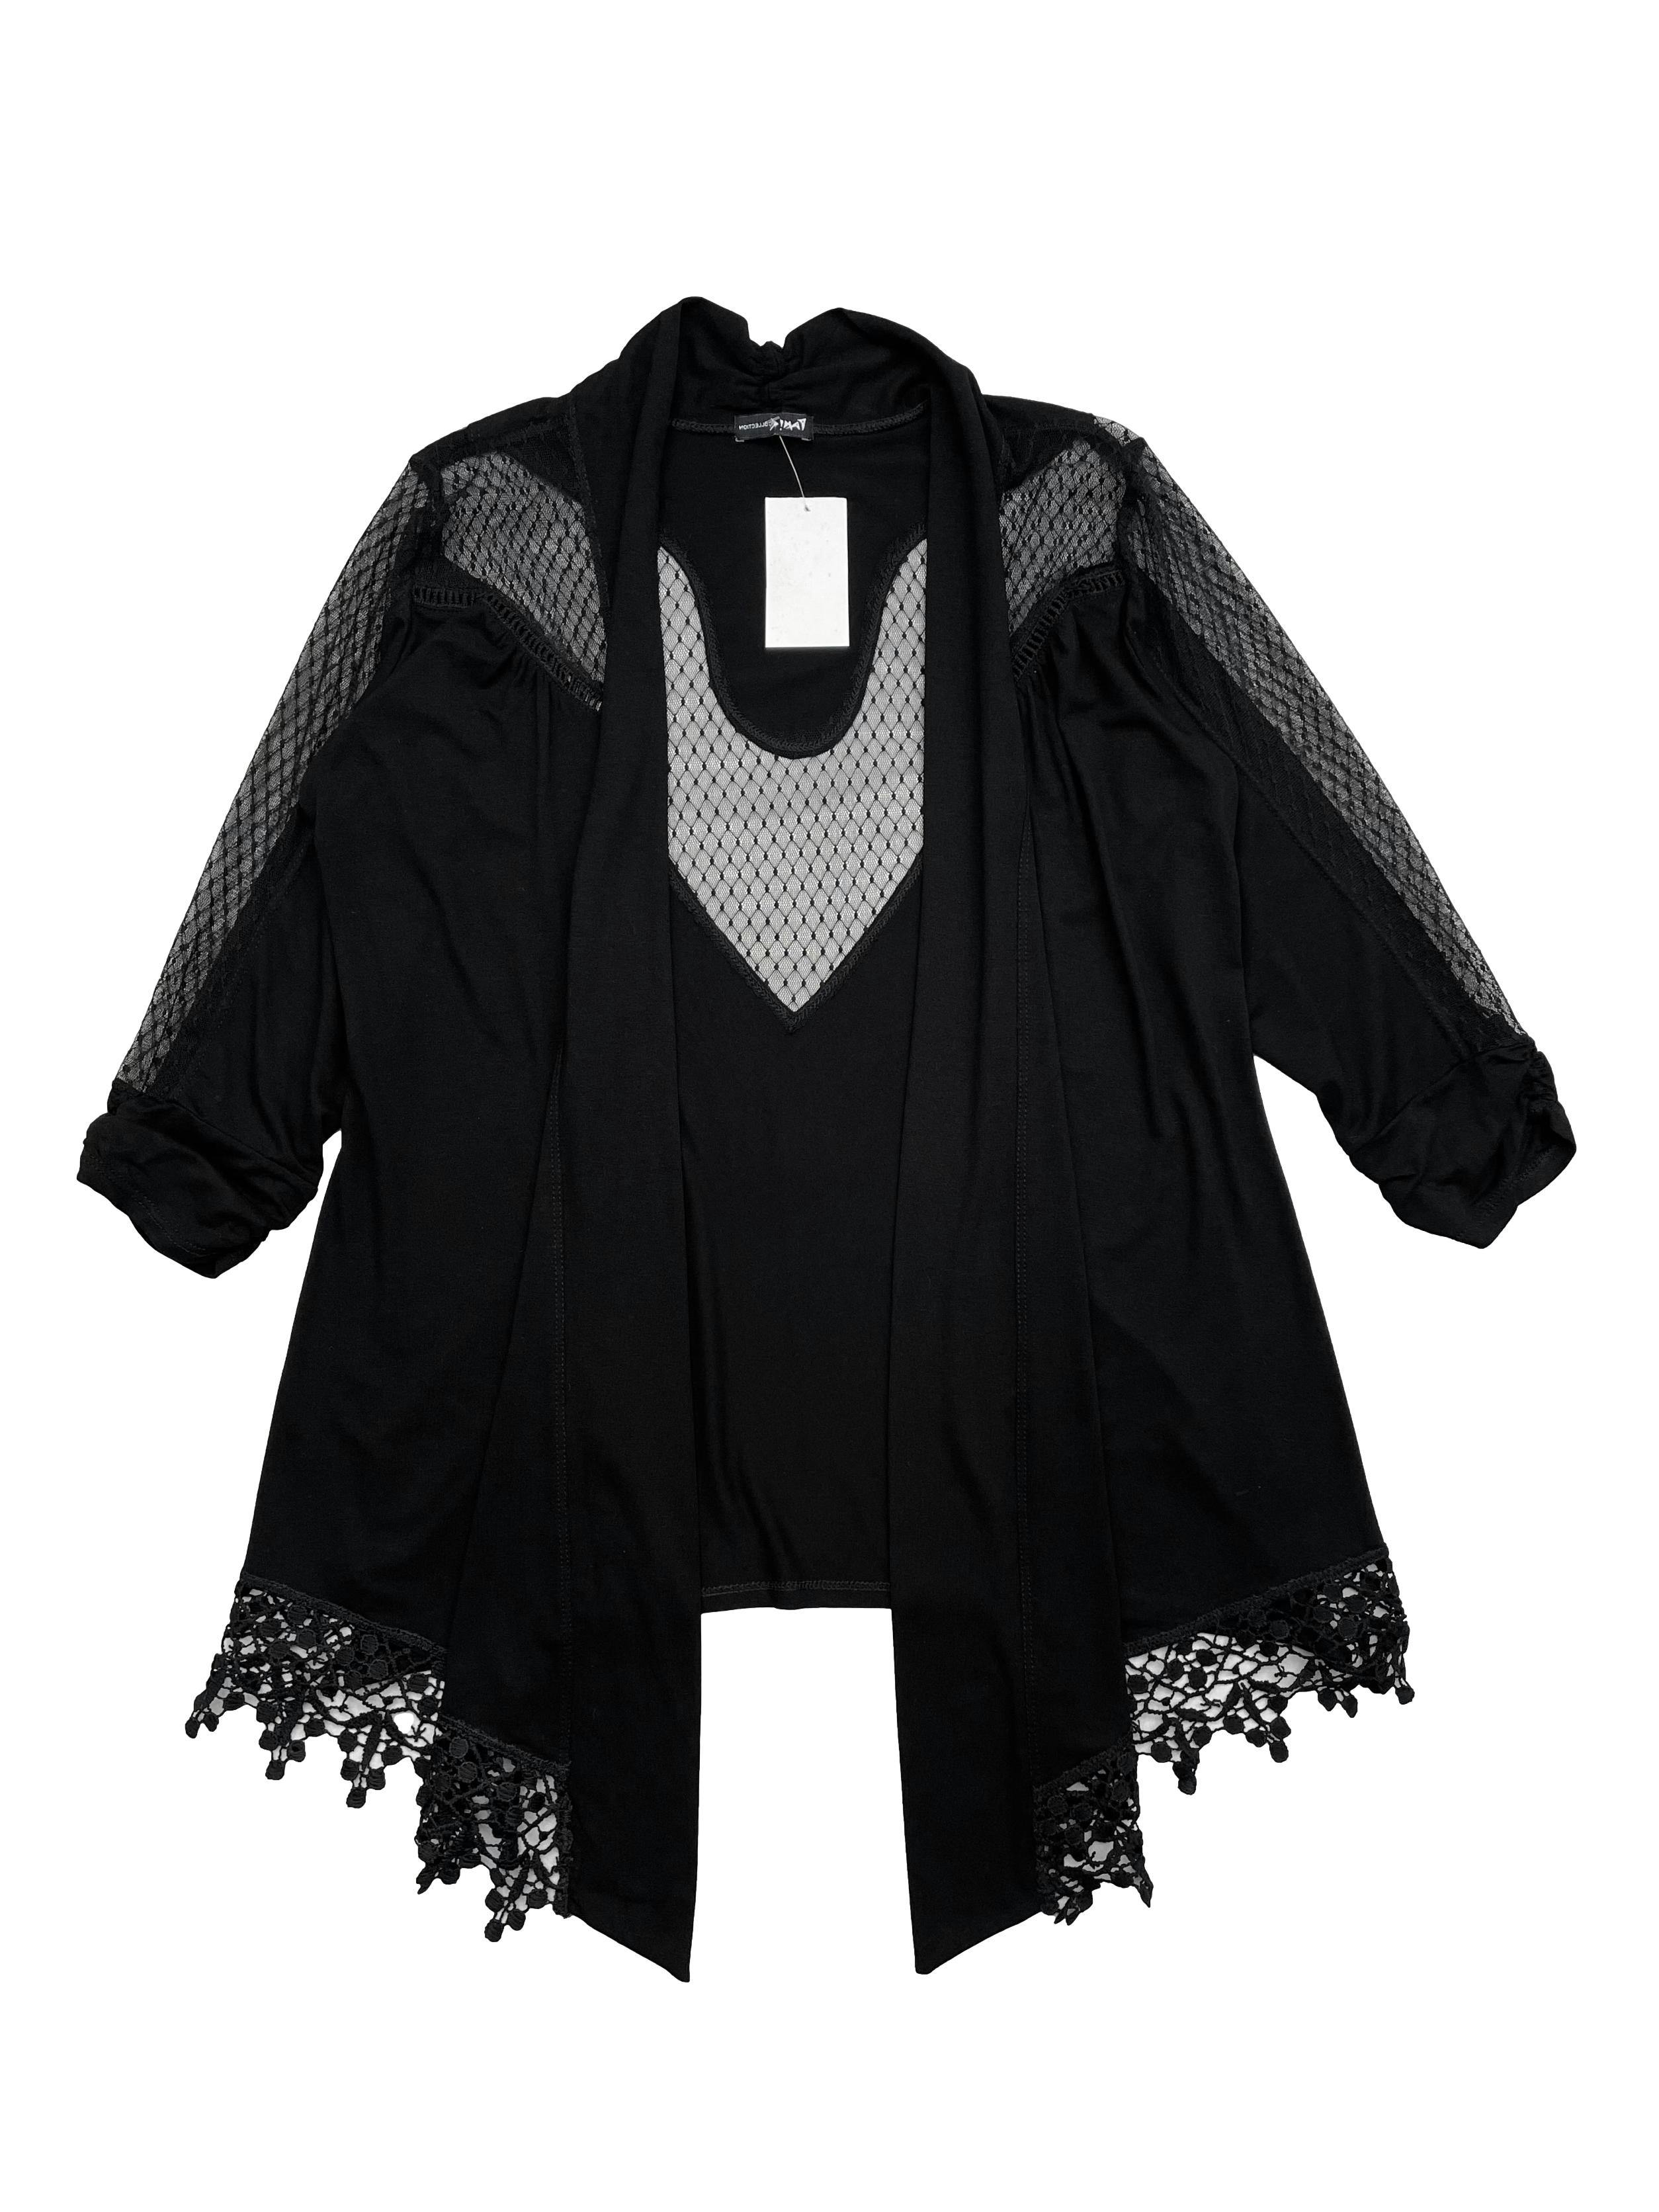 Cardigan negro de licra y mesh, con encaje en basta asimétrica, mangas 3/4. Busto 90cm, Largo 68cm.